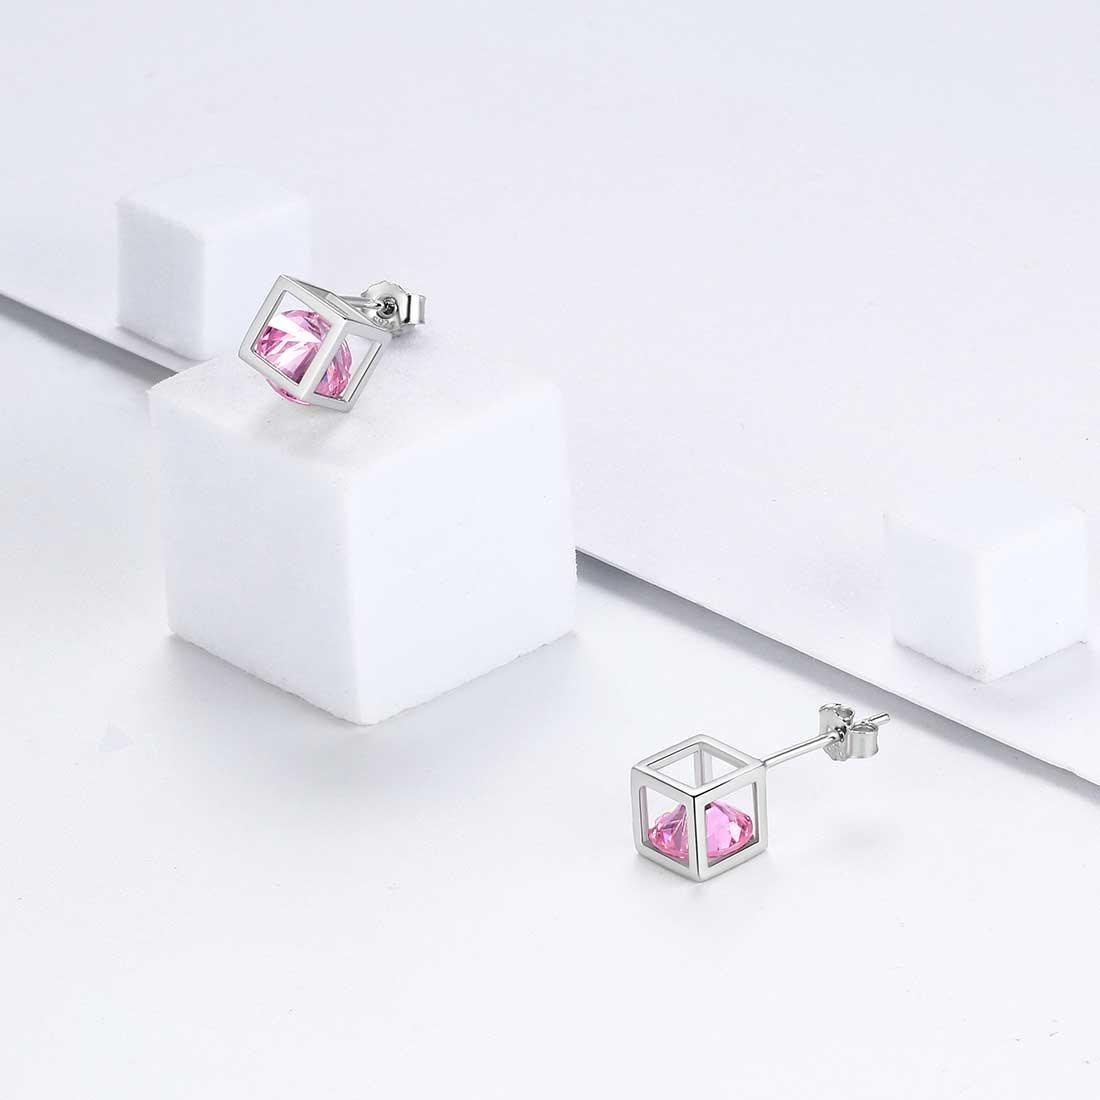 3D Cube Birthstone October Tourmaline Earrings Sterling Silver - Earrings - Aurora Tears